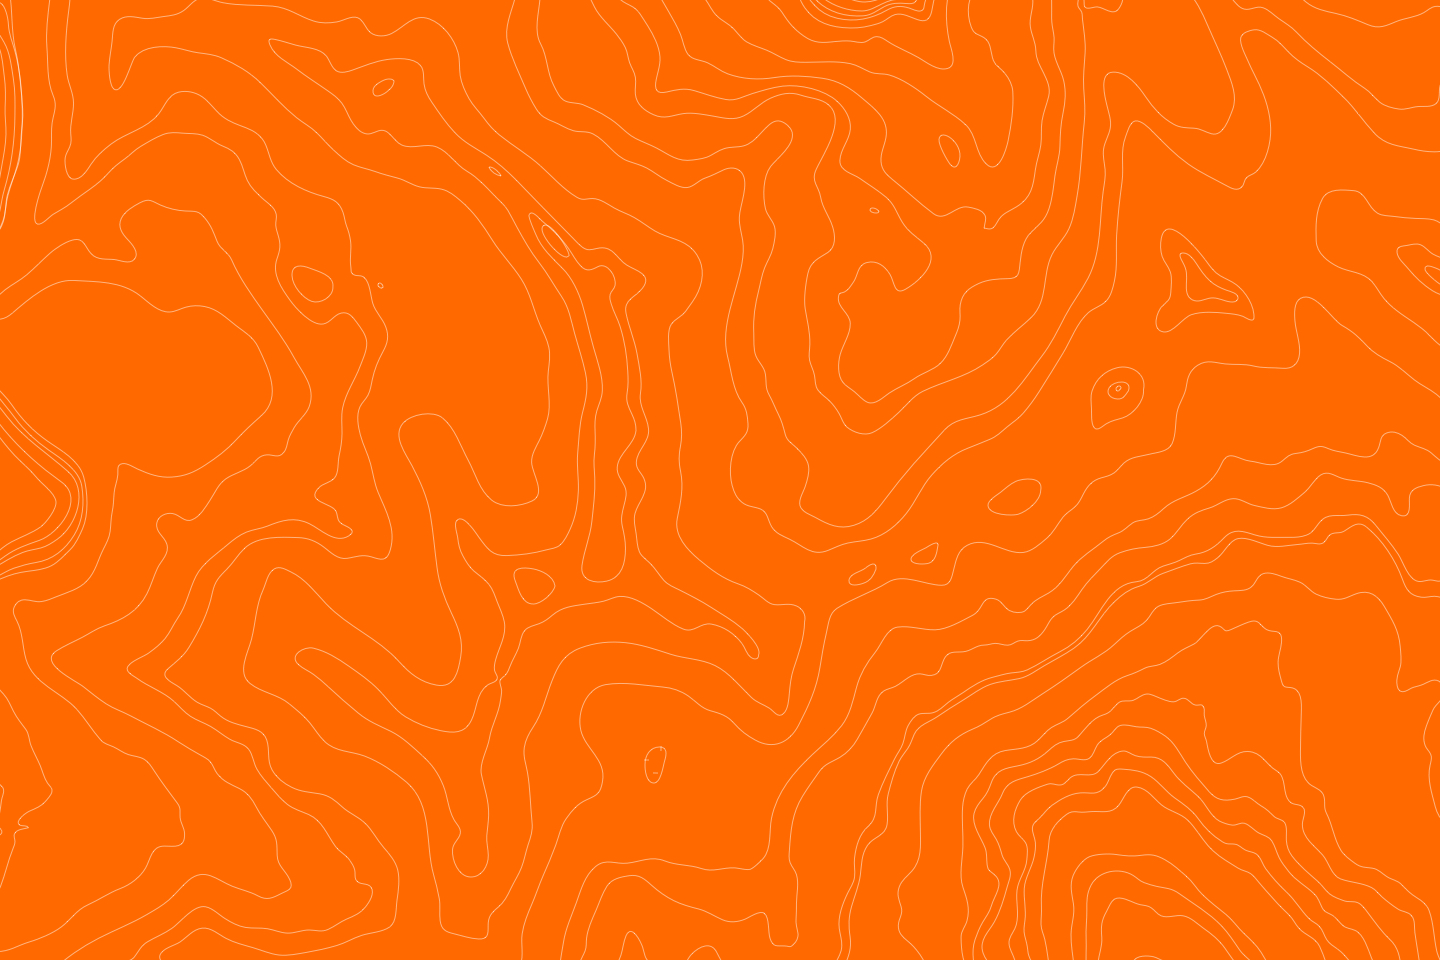 Orange lines